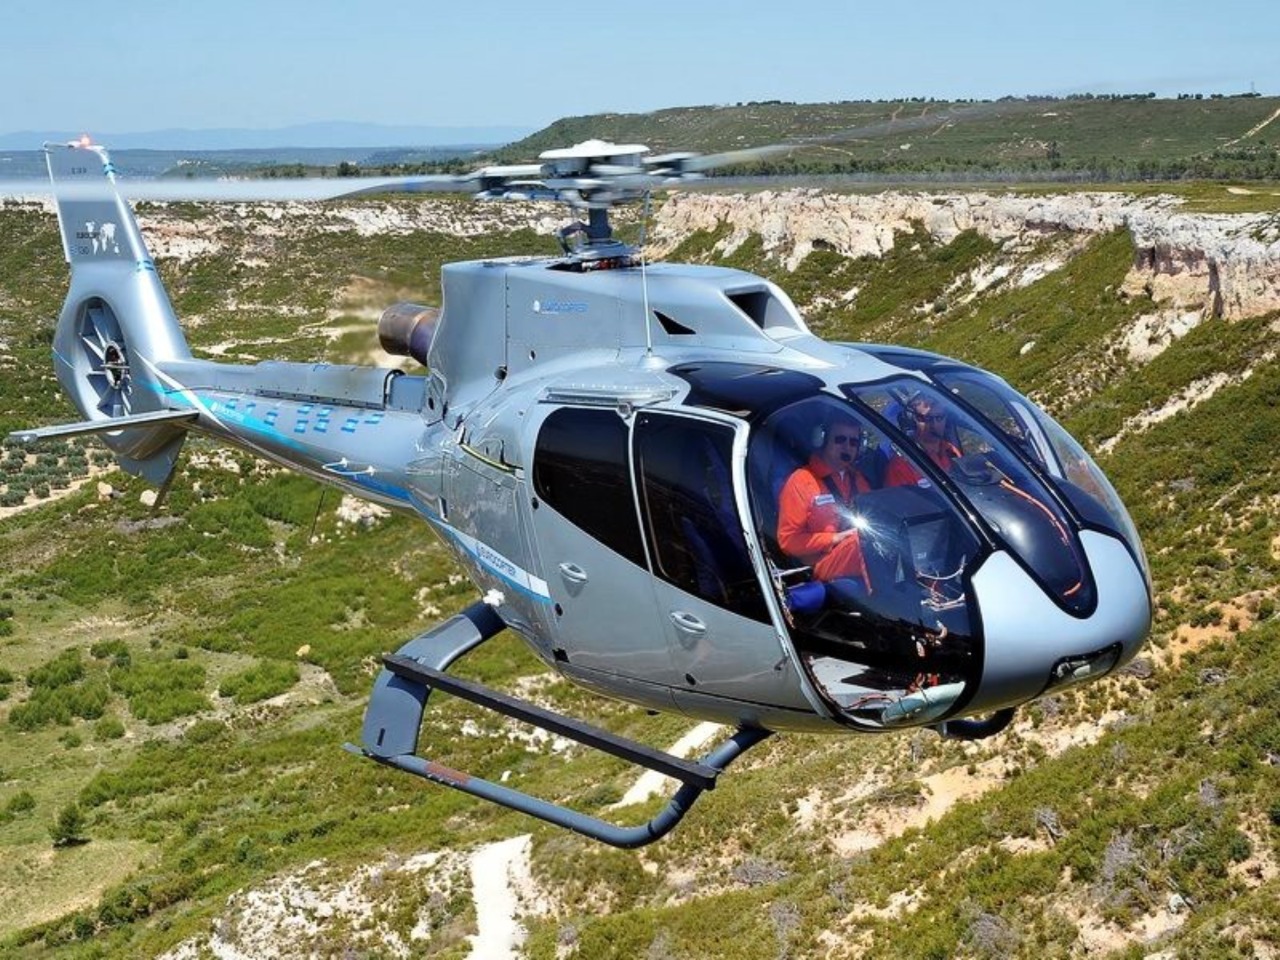 Полет на вертолете над Сулакским каньоном  | Цена 370600₽, отзывы, описание экскурсии